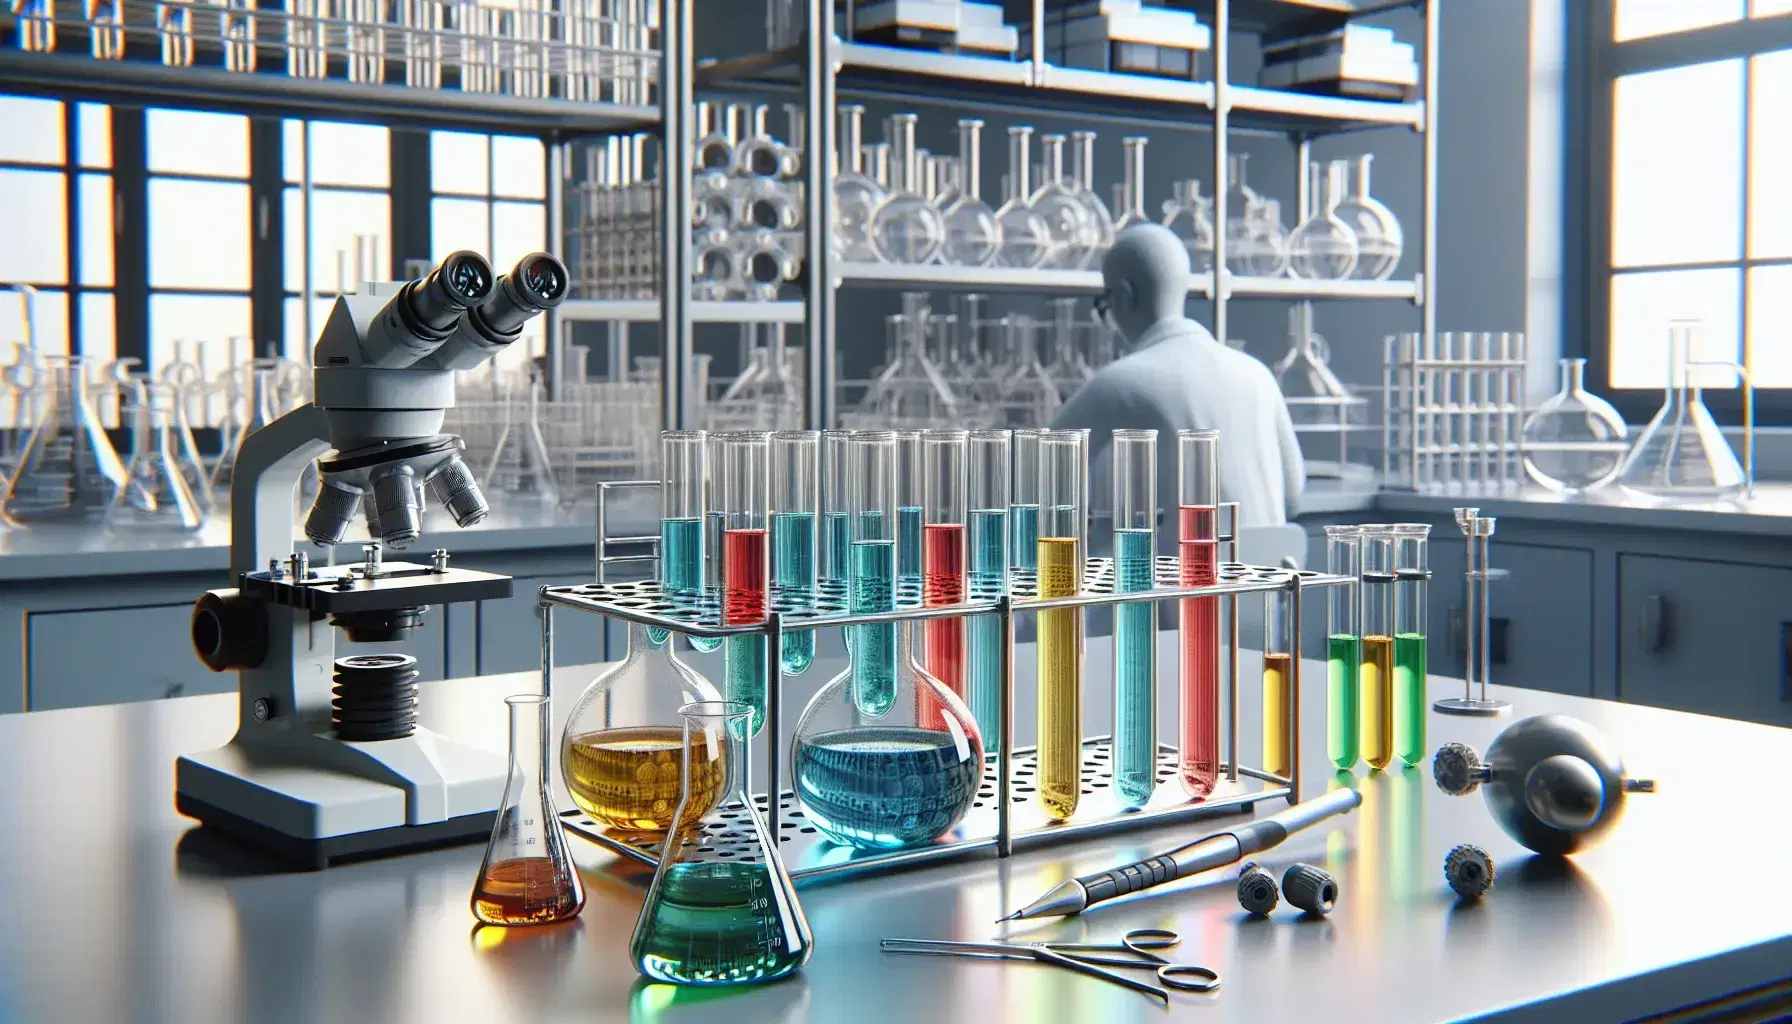 Laboratorio científico con tubos de ensayo de colores en estante metálico, microscopio plateado y científico con bata usando pipeta.